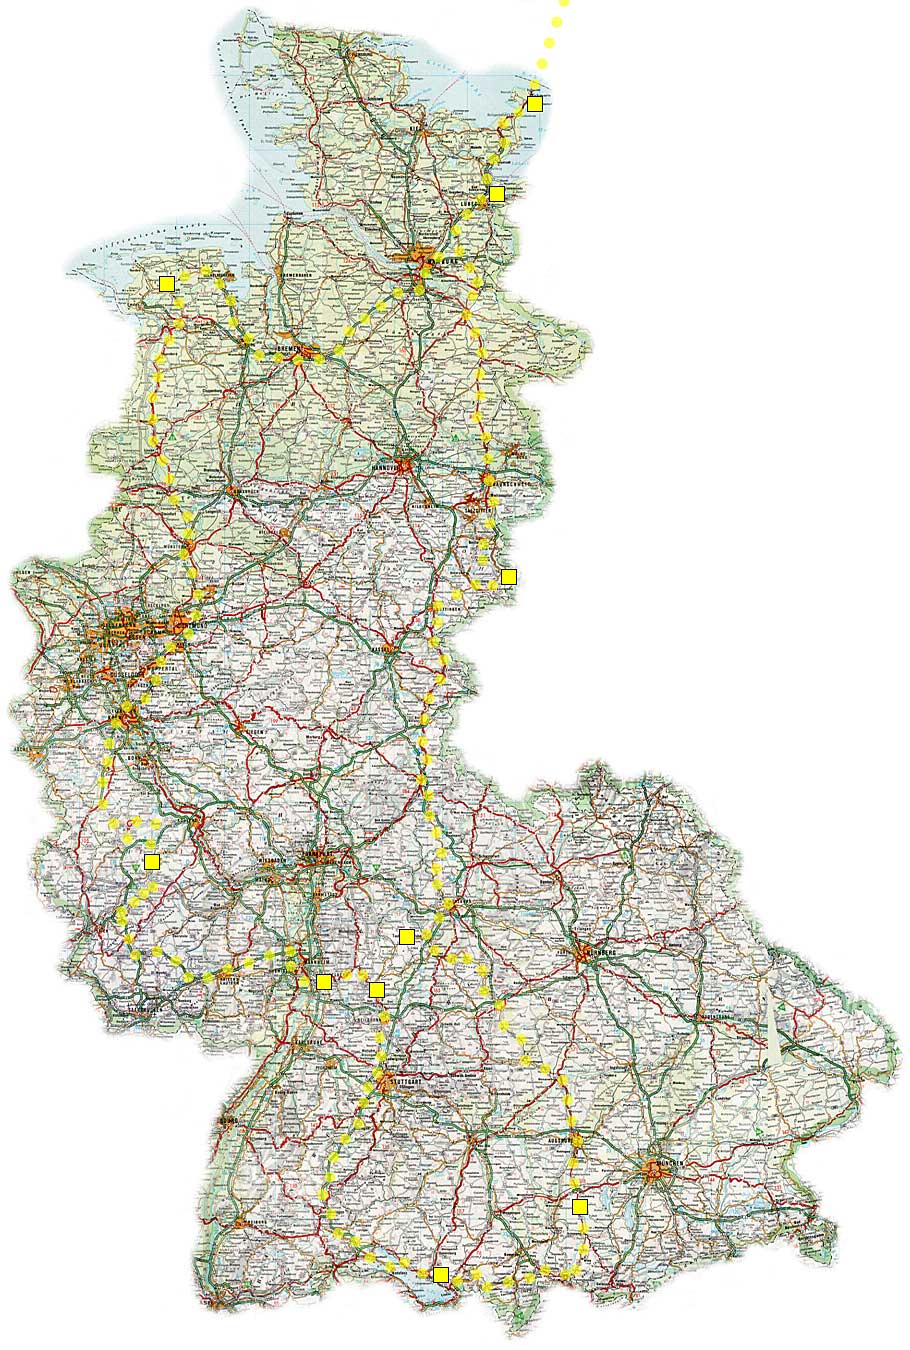 Bilden visar en stor detaljkarta över Västtyskland, med färdväg markerad hela varvet runt.